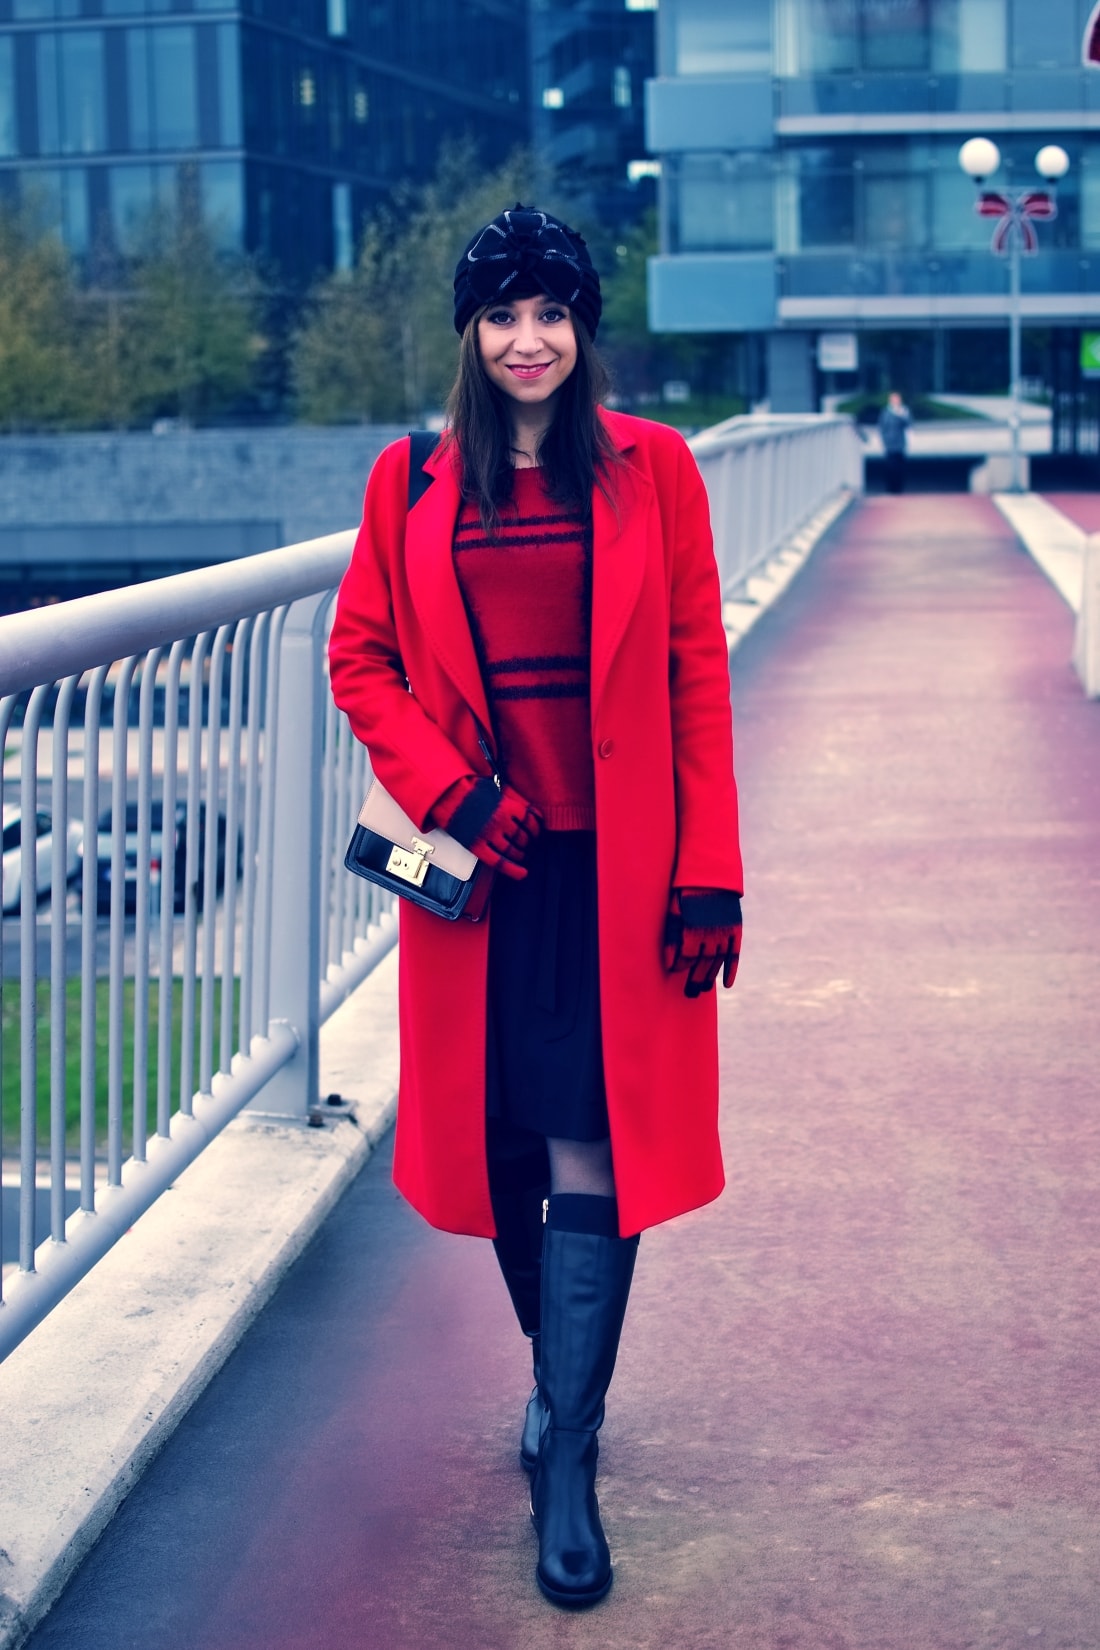 Prajem vám_Katharine-fashion is beautiful_Červený kabát Zara_Červený vzorovaný sveter More&More_Vianoce_Katarína Jakubčová_Fashion blogger